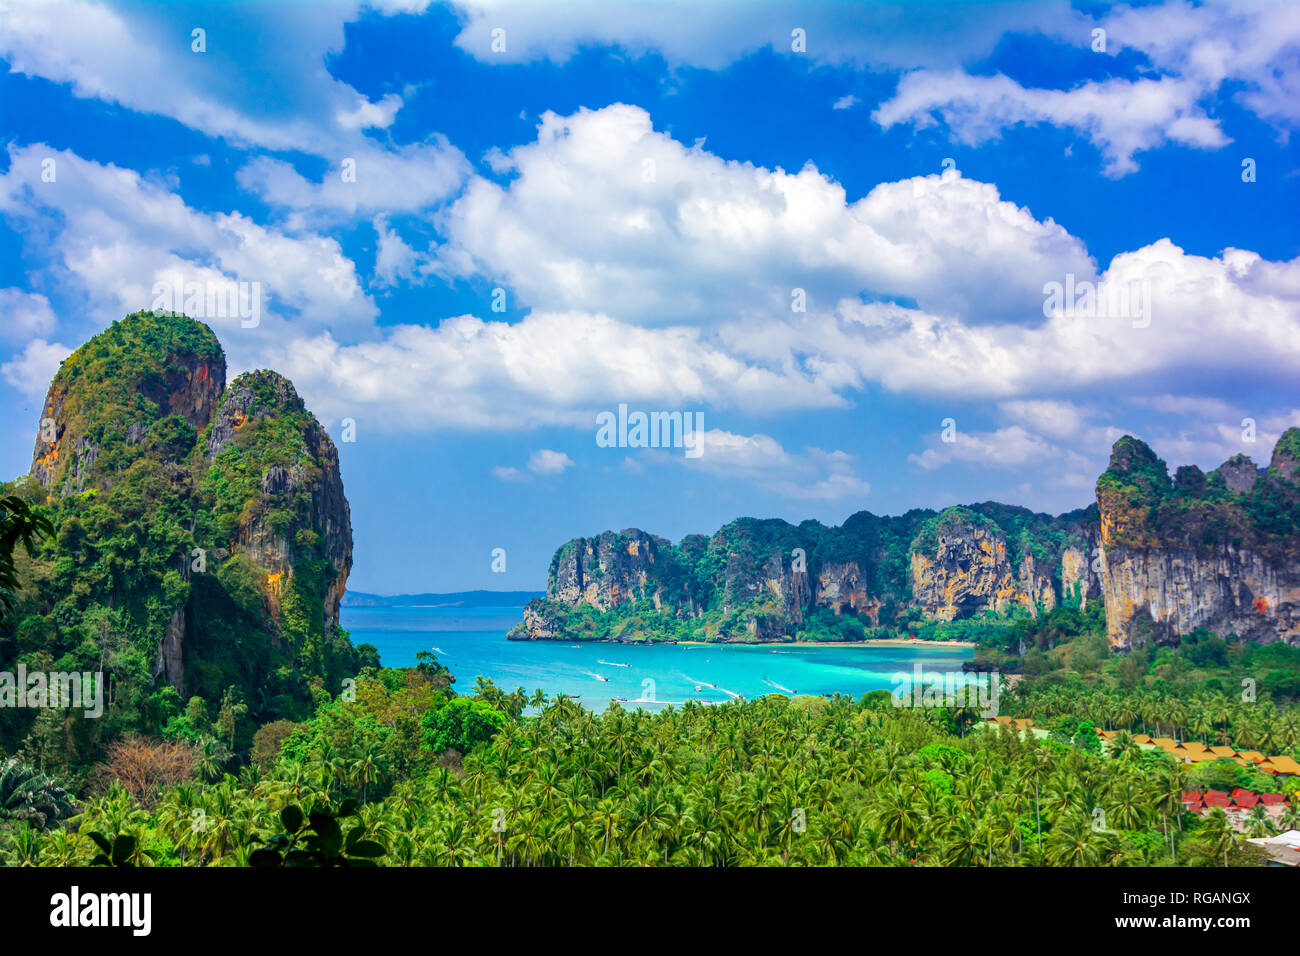 Railey Beach, Krabi, Thailandia: bella panoramica con acqua blu e scogliere calcaree Foto Stock